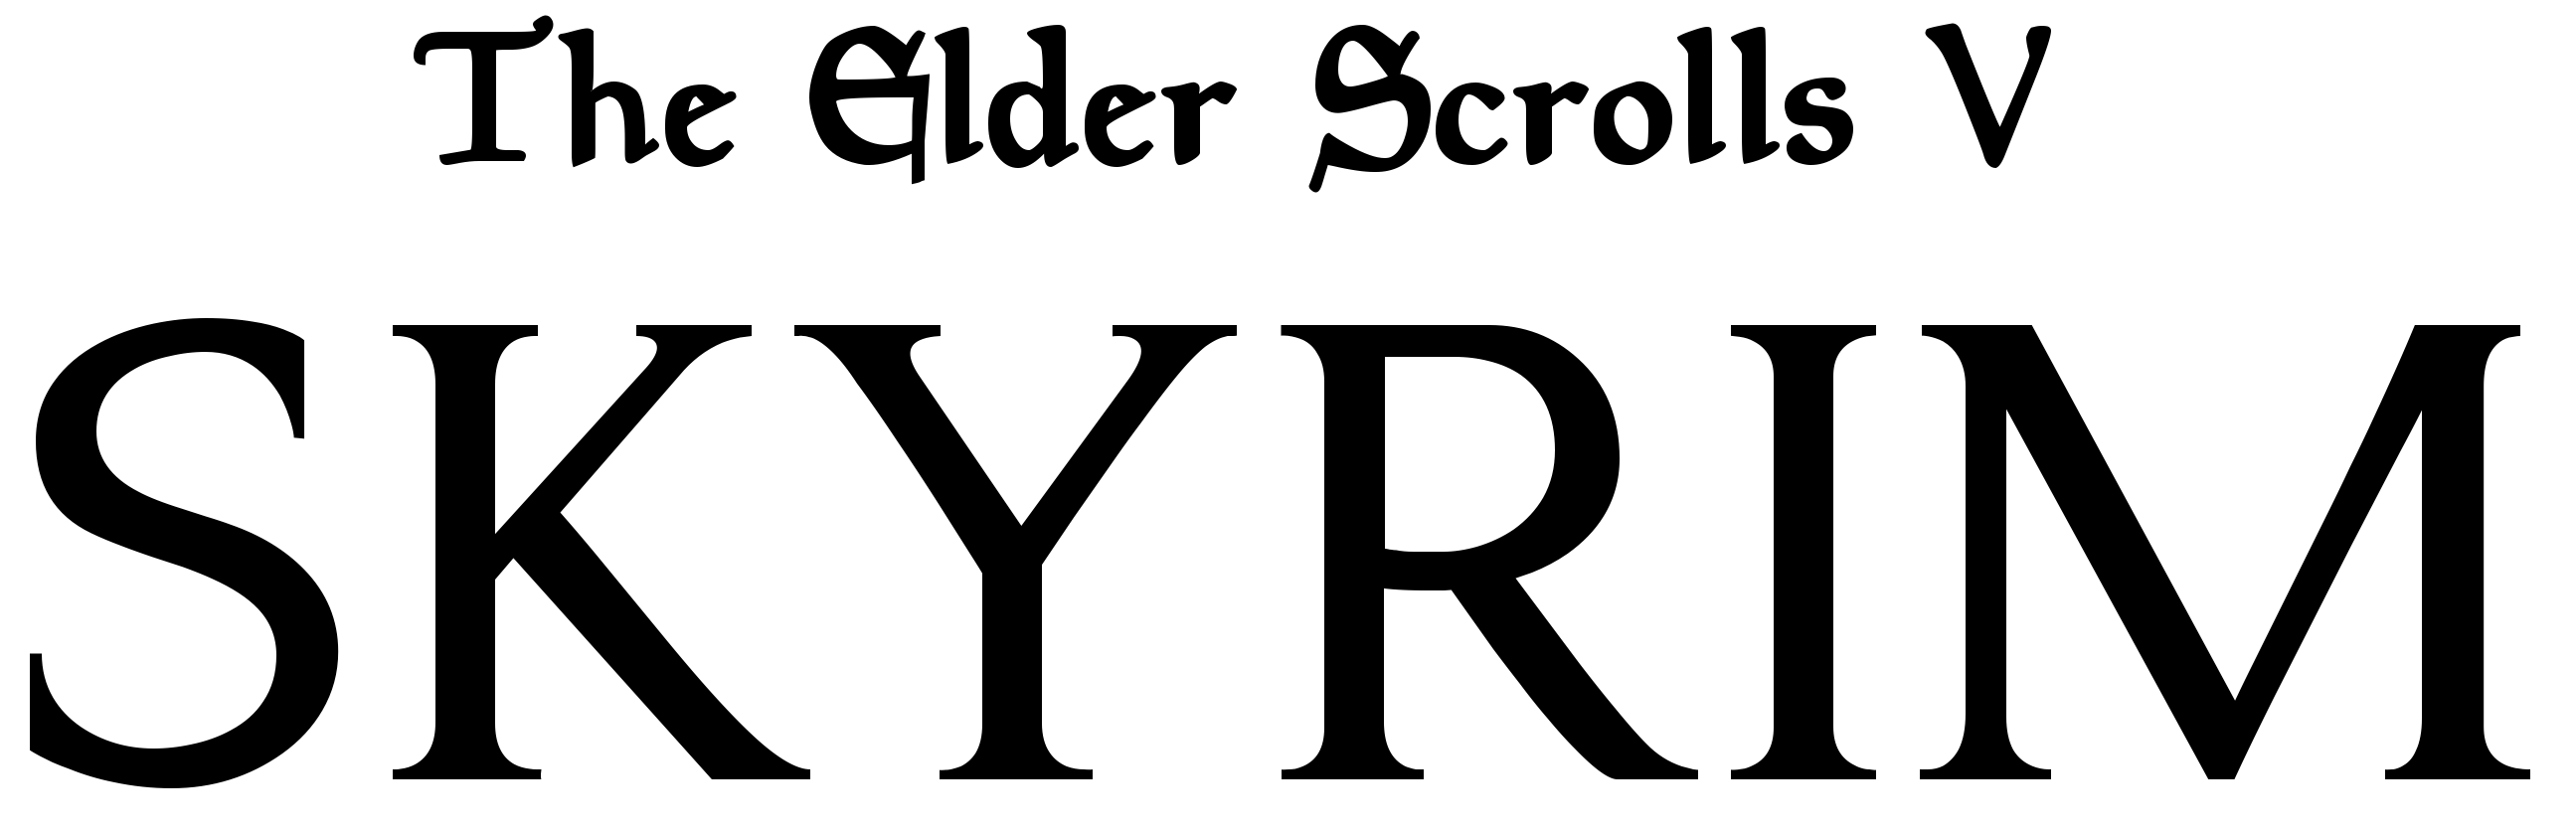 The Elder Scrolls V: Skyrim Logo Download Vector